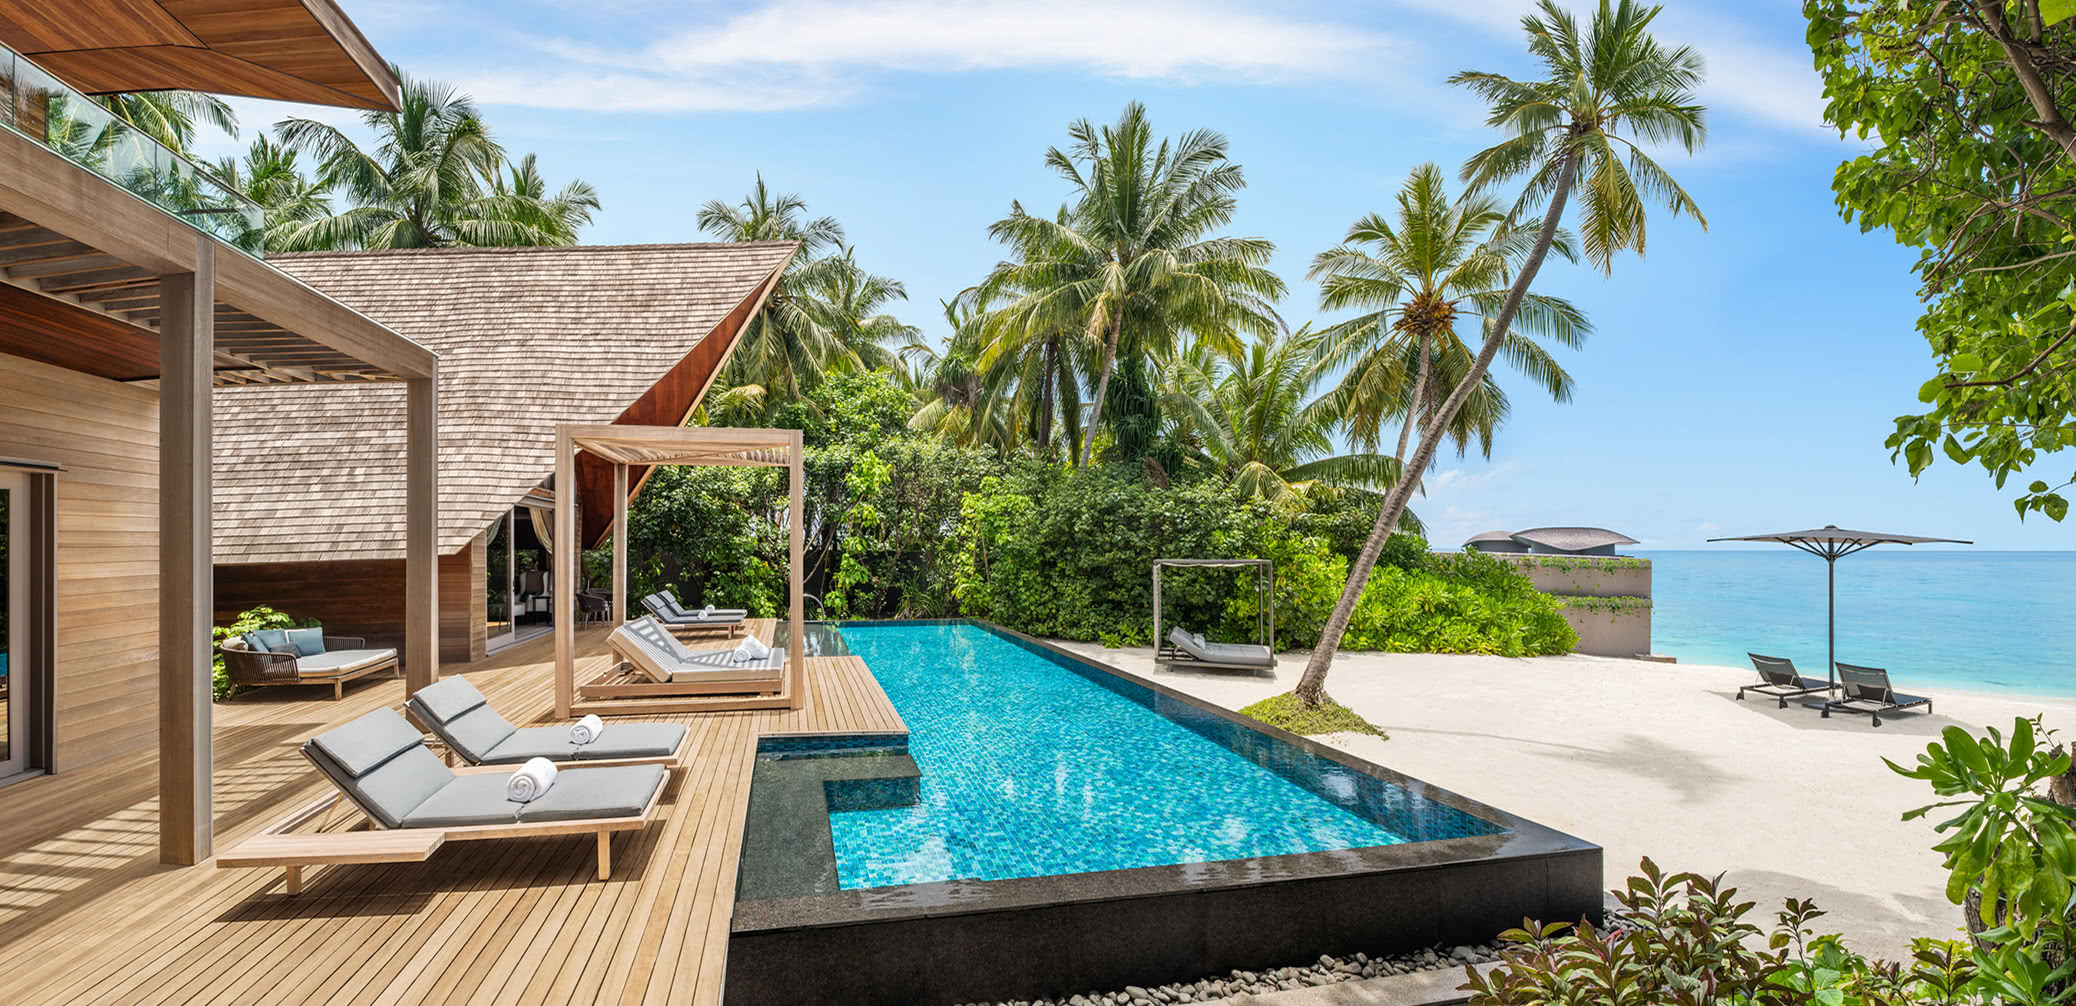 Review: The St. Regis Maldives Vommuli Resort